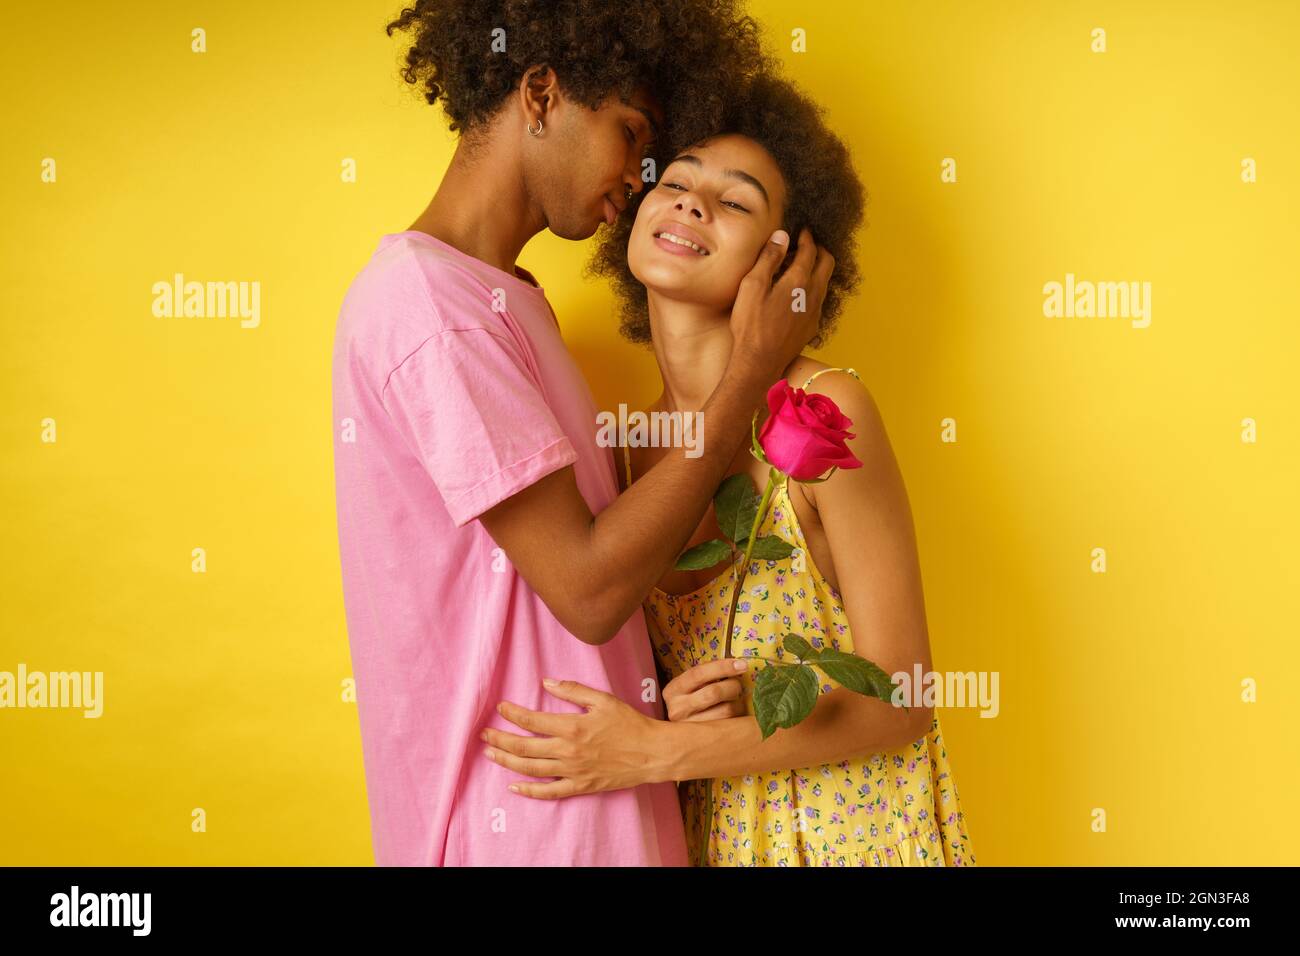 Romantique homme donner une rose à sa petite amie pour la Saint-Valentin Banque D'Images